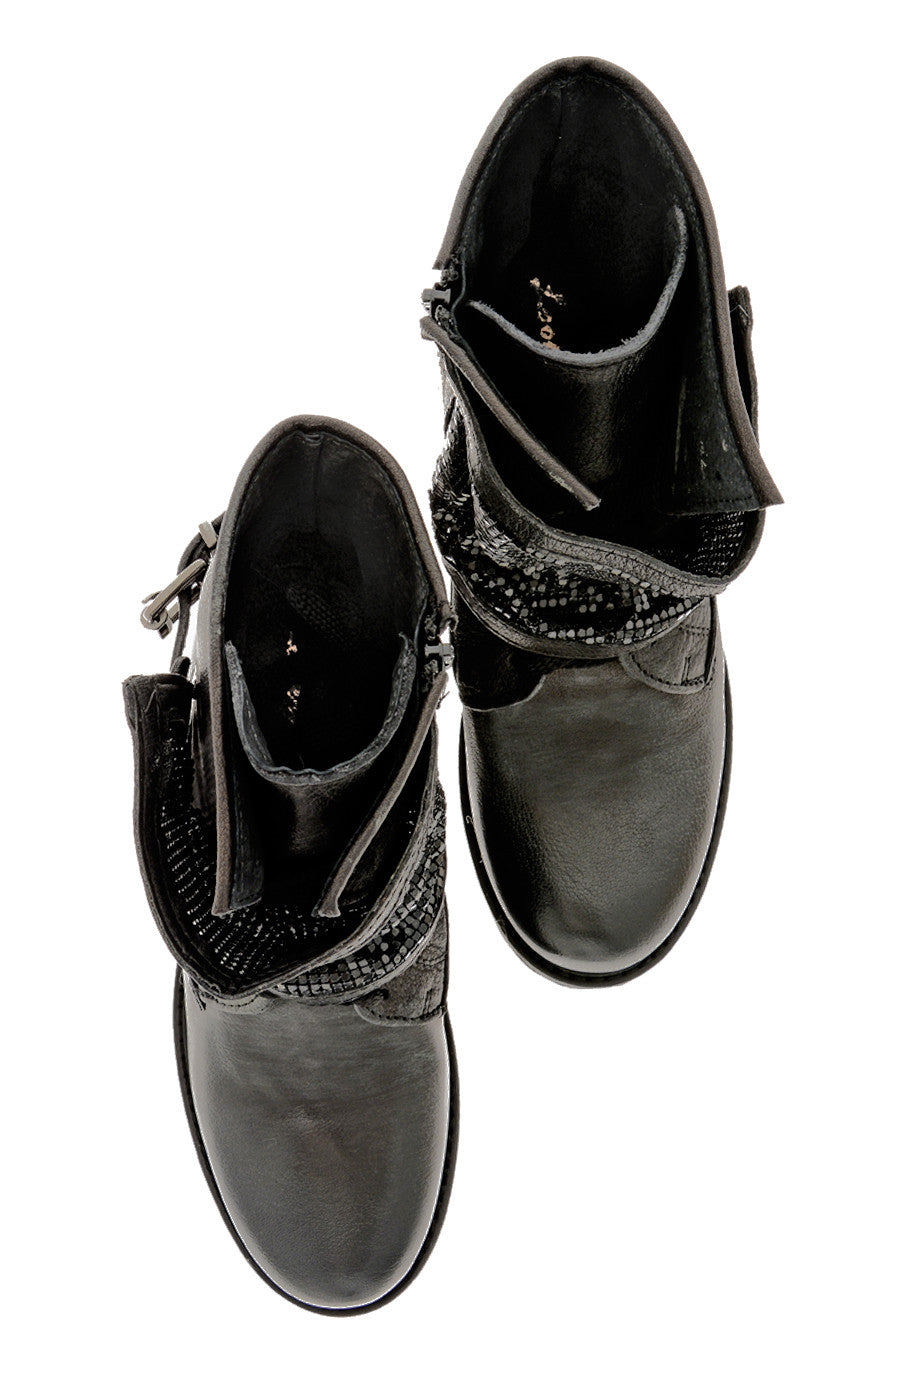 Mαύρα Μποτάκια με Μεταλλικό Πλέγμα - Looking | Γυναικεία Παπούτσια